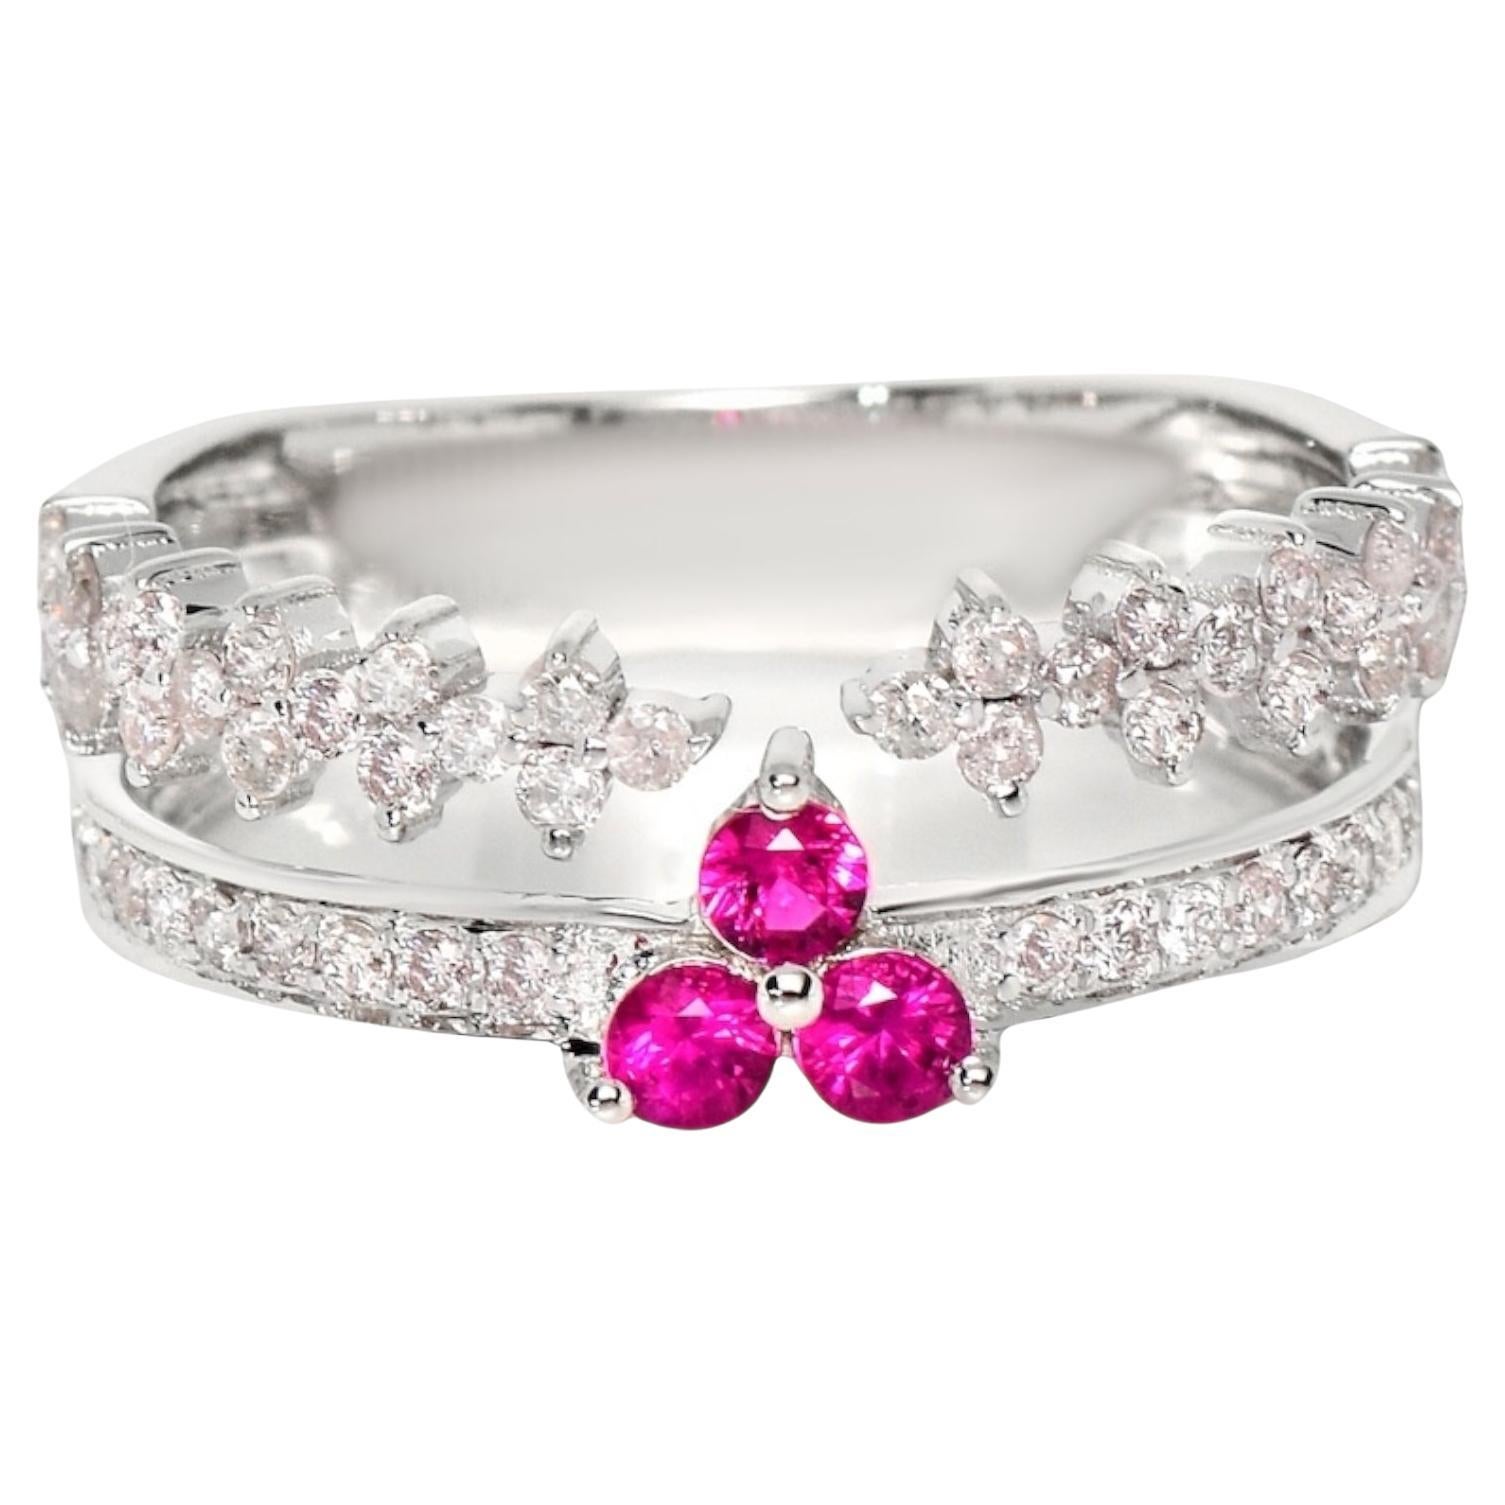 IGI 14K 0.55 ct Natural Pink Diamonds&Ruby Vintage Engagement Ring For Sale